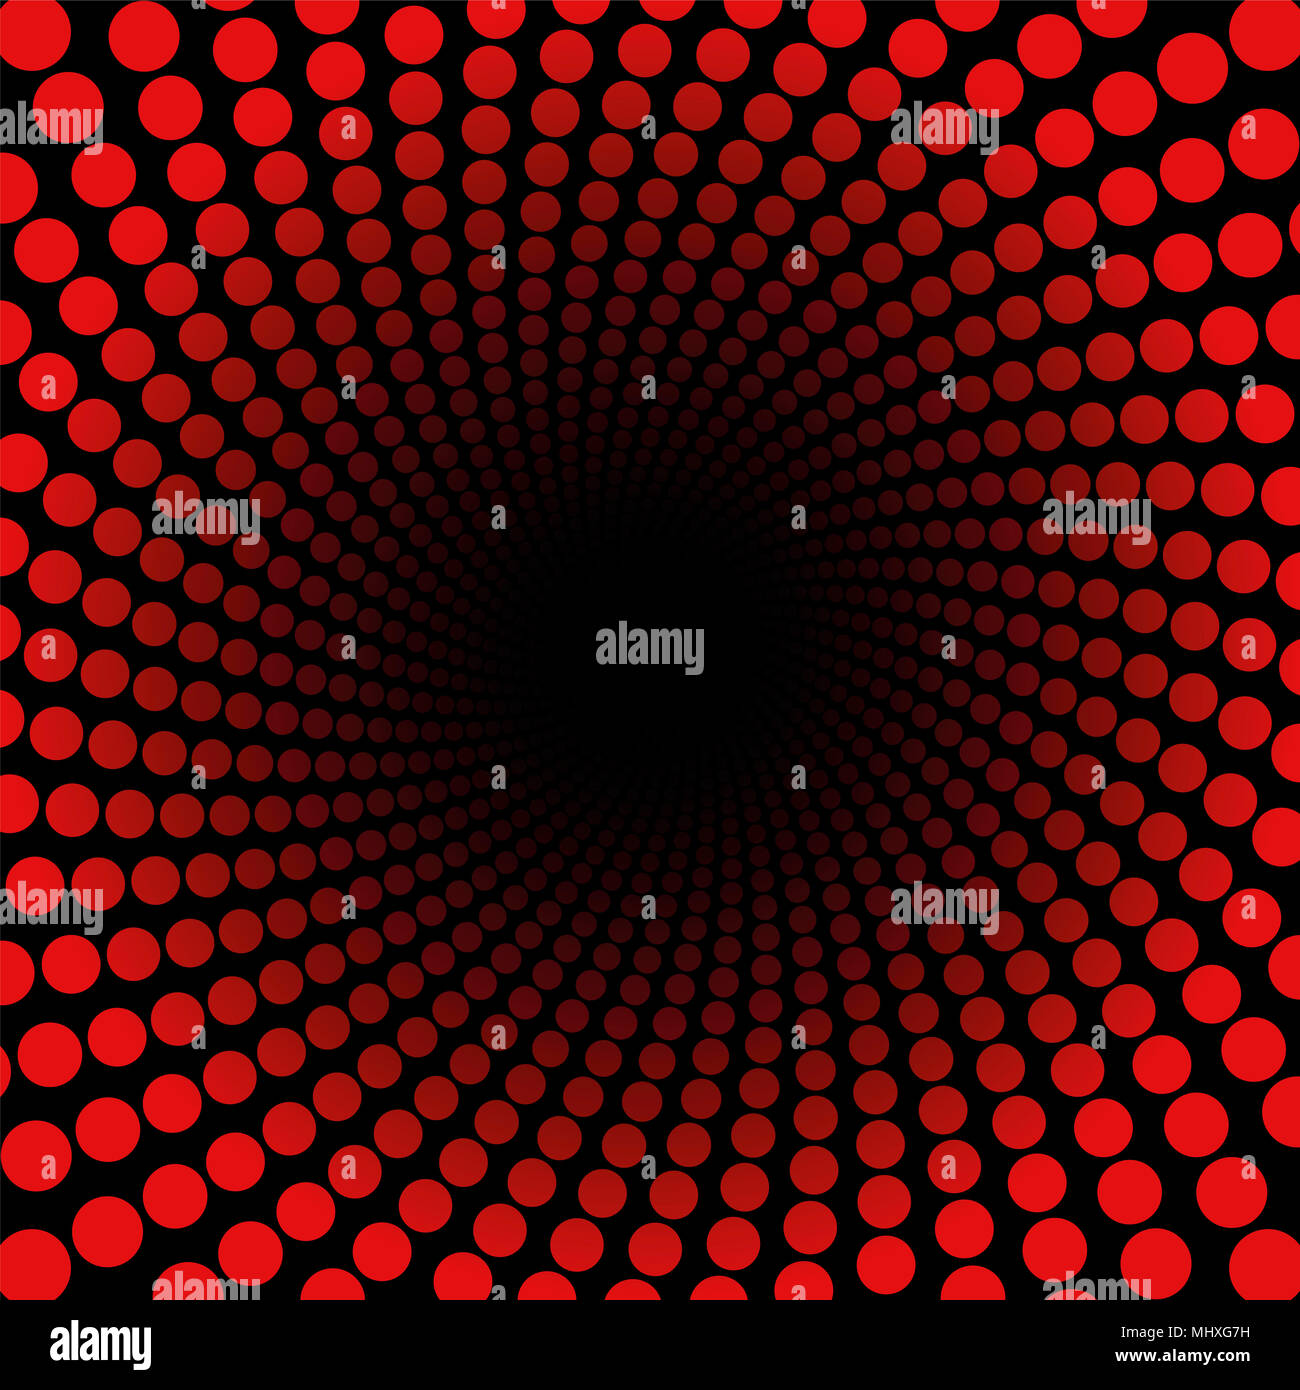 Configuration en spirale avec des points rouges, tunnel avec centre noir - twisted fractale circulaire - background illustration, puissant, hypnotique, psychedel dynamiquement Banque D'Images